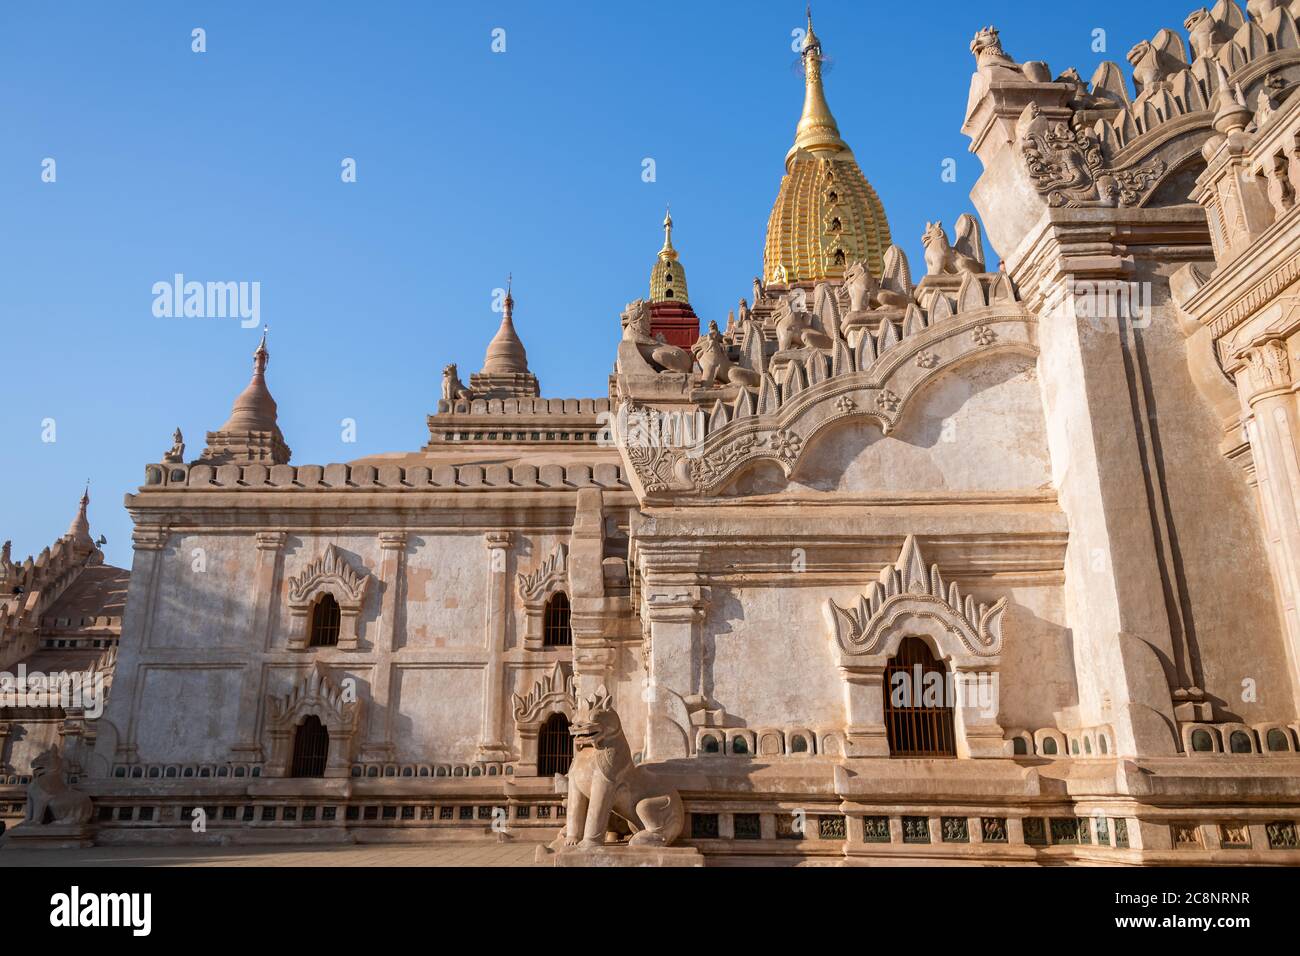 Pagode Ananda Phaya, Old Bagan, Myanmar. Beau XIIe siècle, temple bouddhiste considéré comme une merveille architecturale. Extérieur du bâtiment avec ciel bleu Banque D'Images